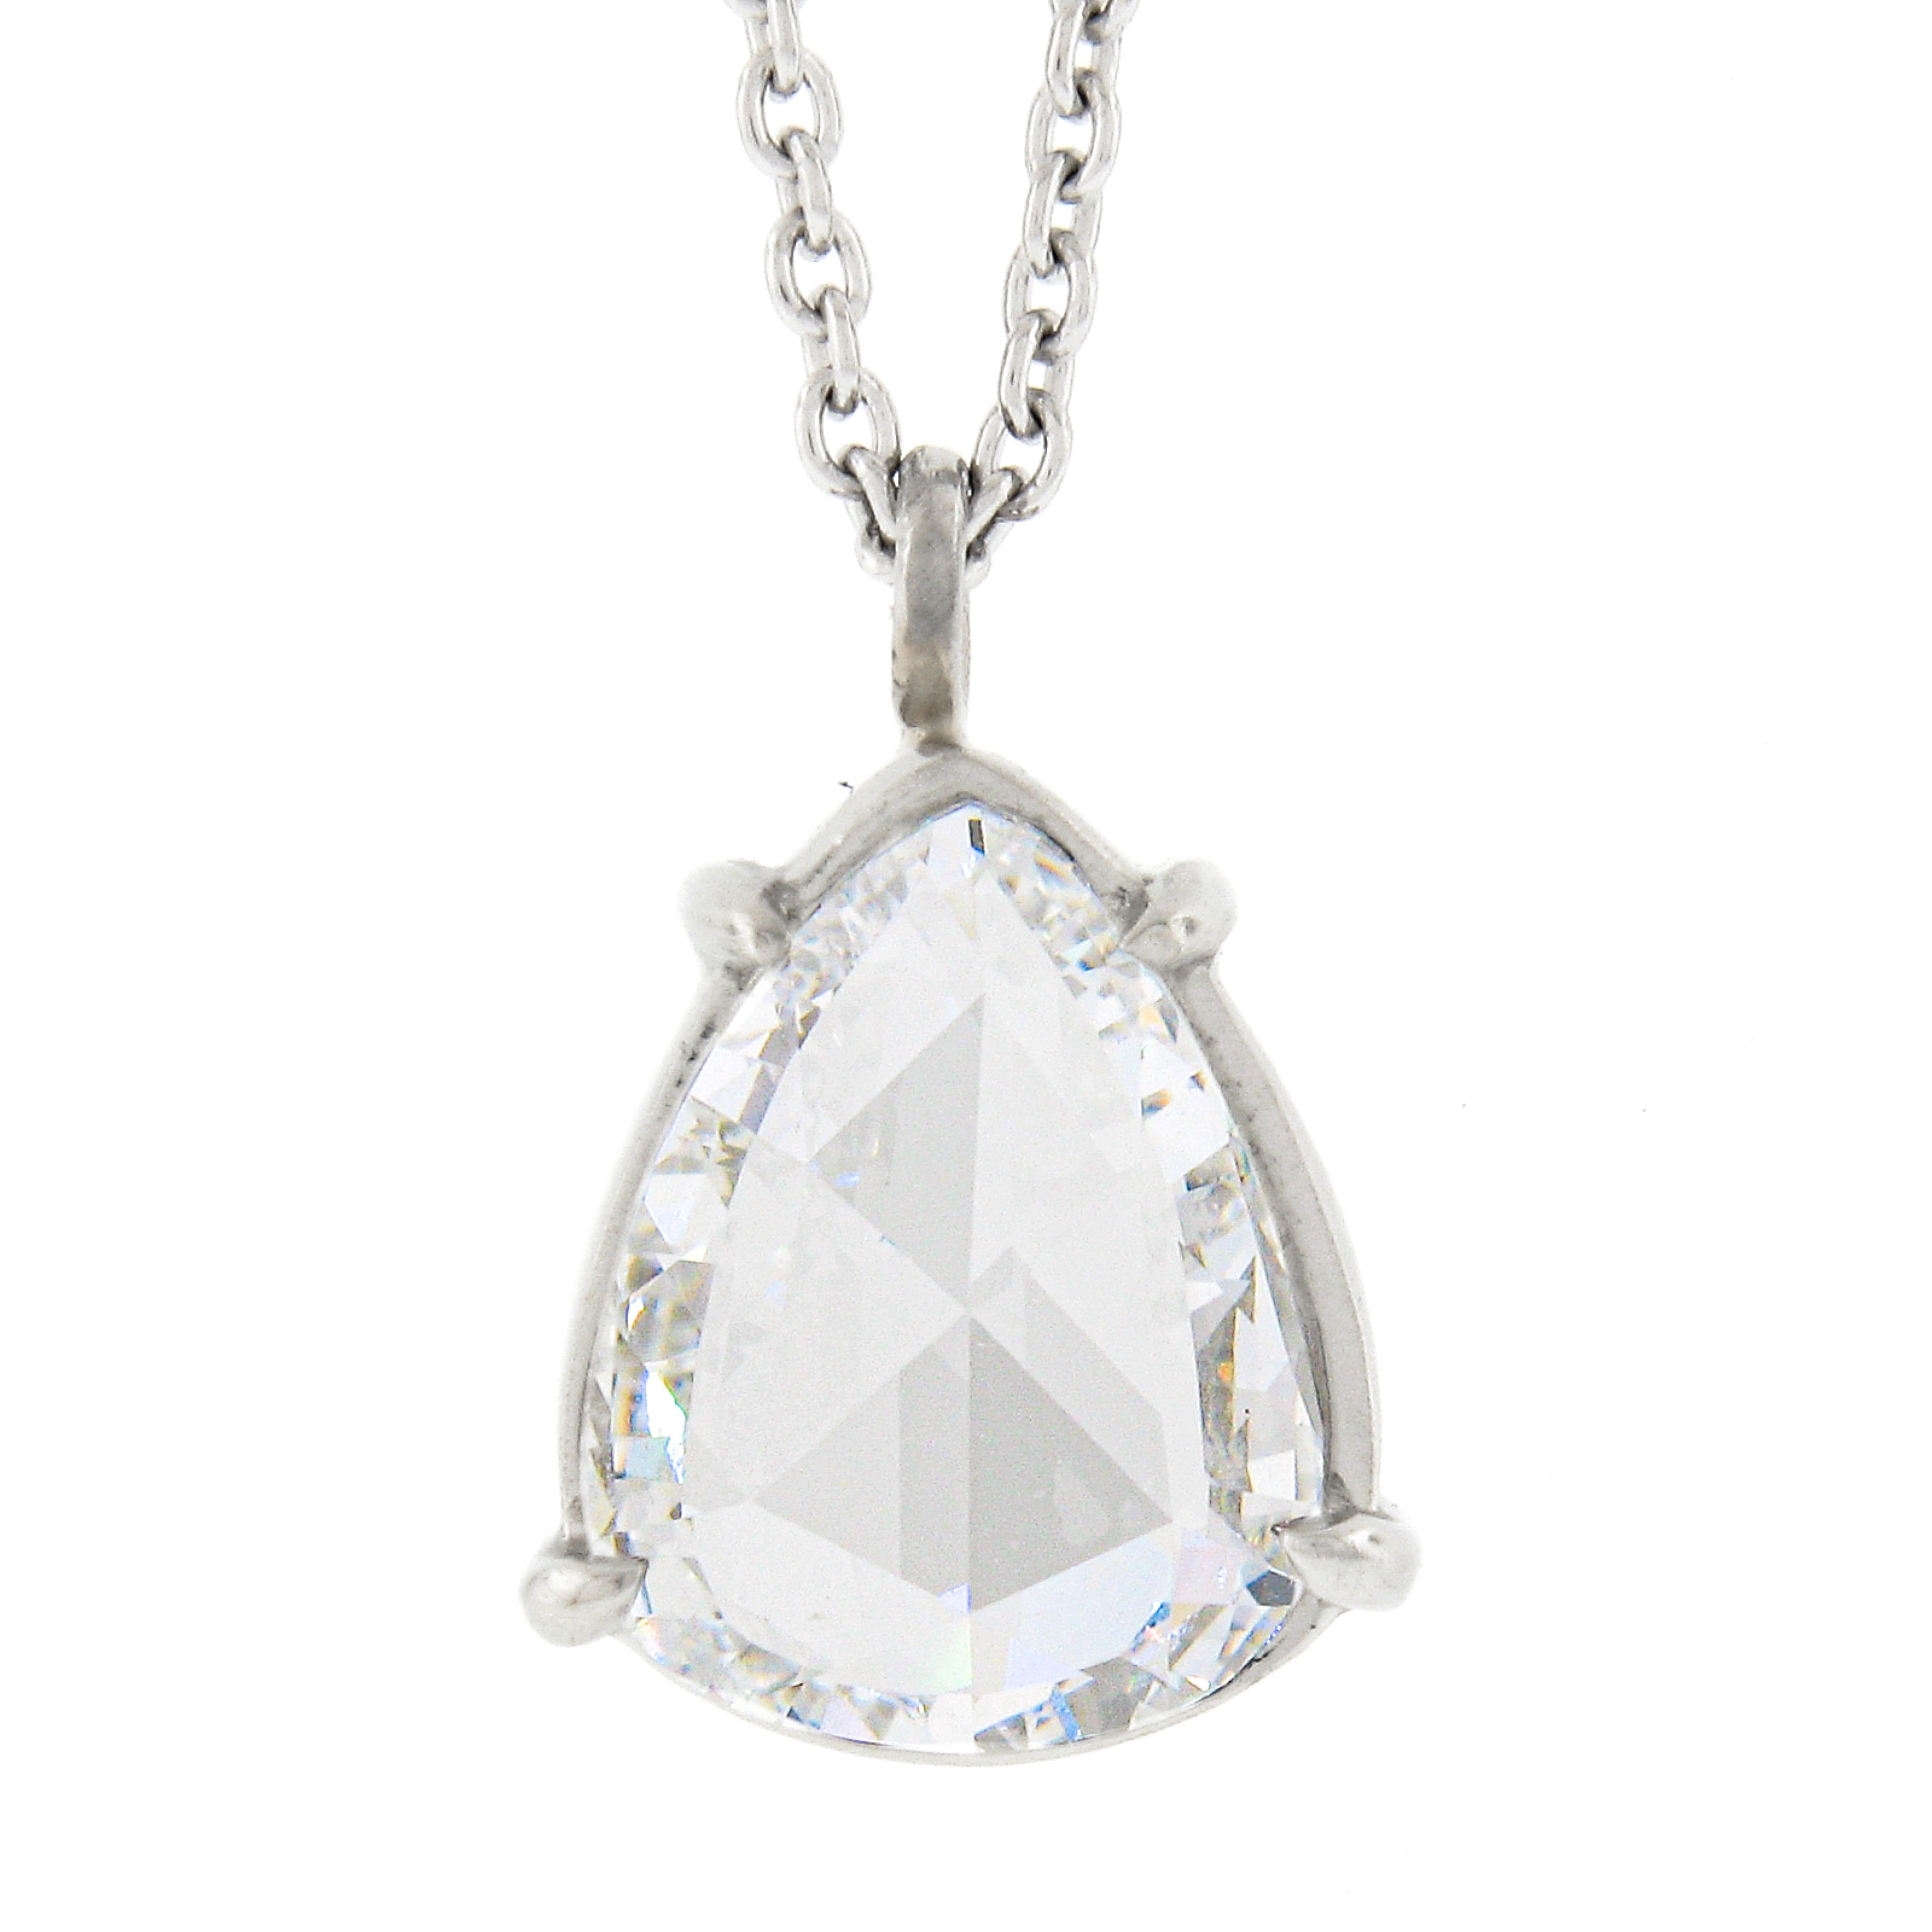 Nous avons ici un magnifique collier pendentif en diamants, tout neuf, fabriqué en platine massif. Ce pendentif coulissant de style collier présente un solitaire en diamant taille rose poire de très belle qualité, certifié GIA, soigneusement serti